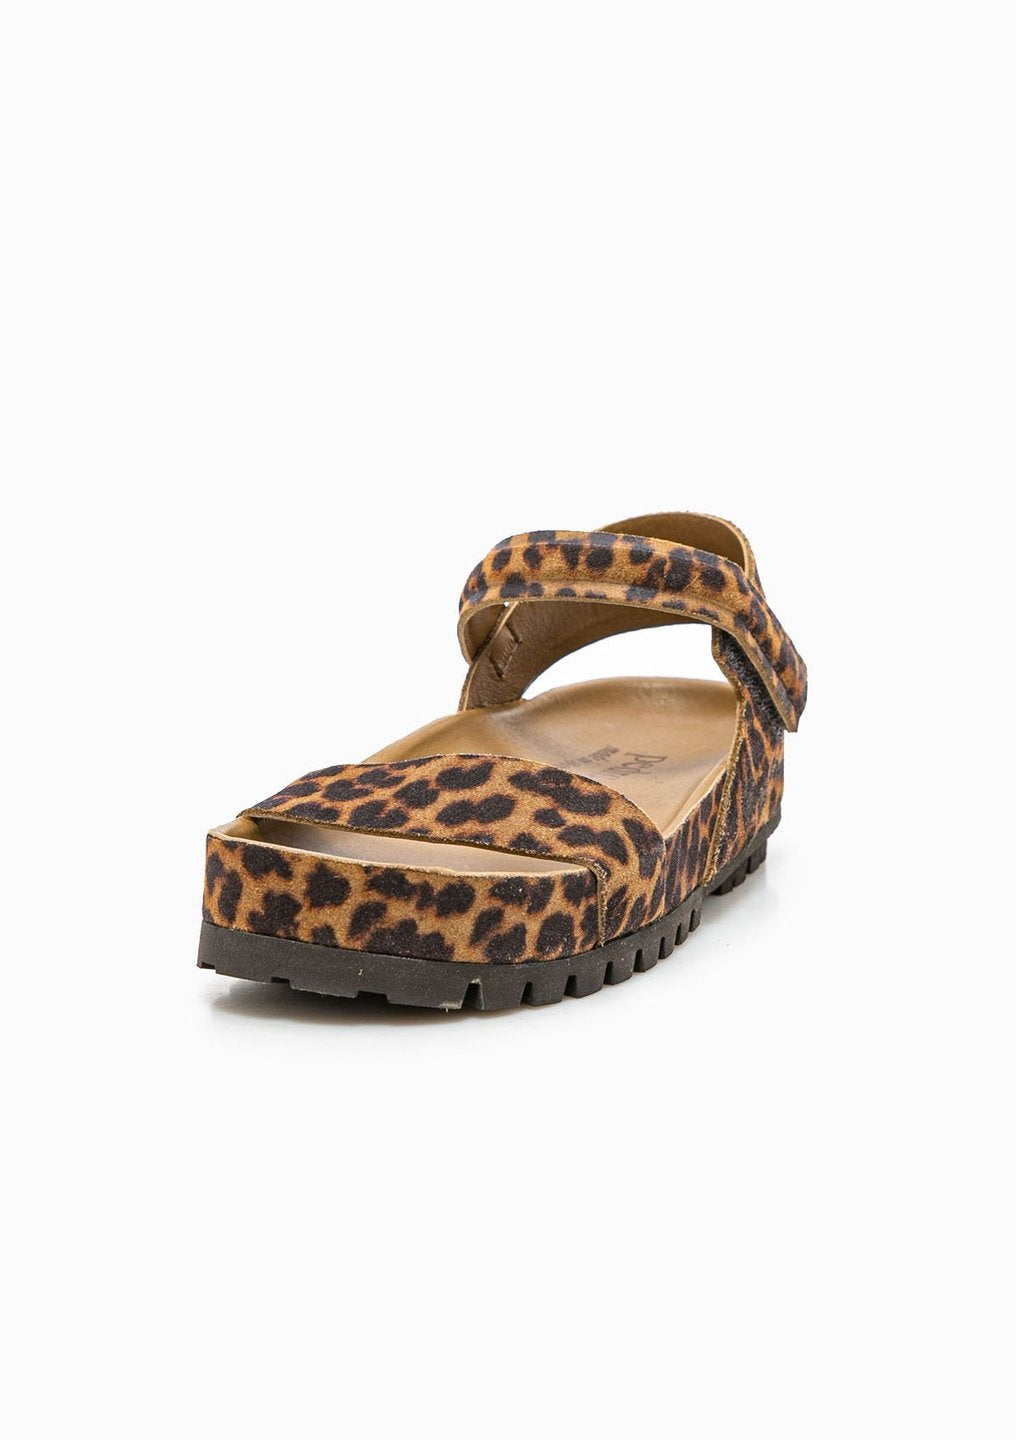 Abreu Sandal | Cumin Leopard Castoro